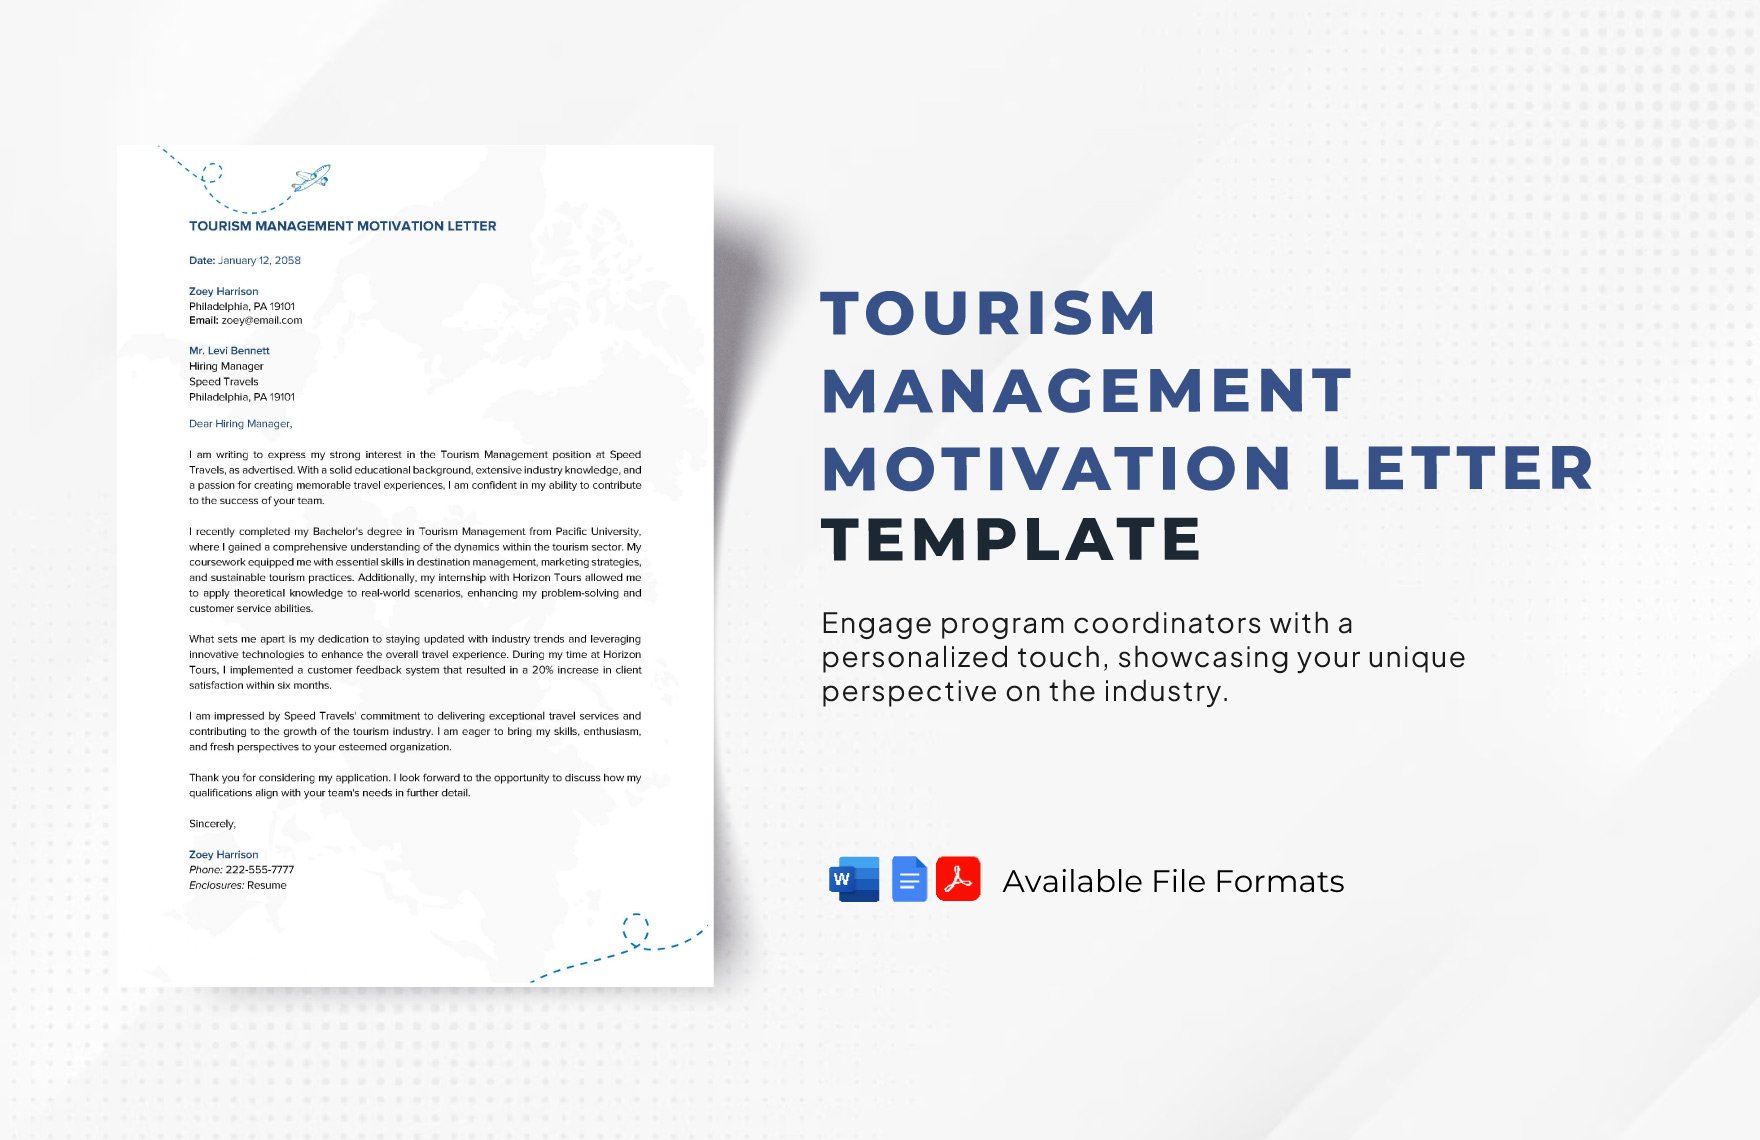 Tourism Management Motivation Letter Template